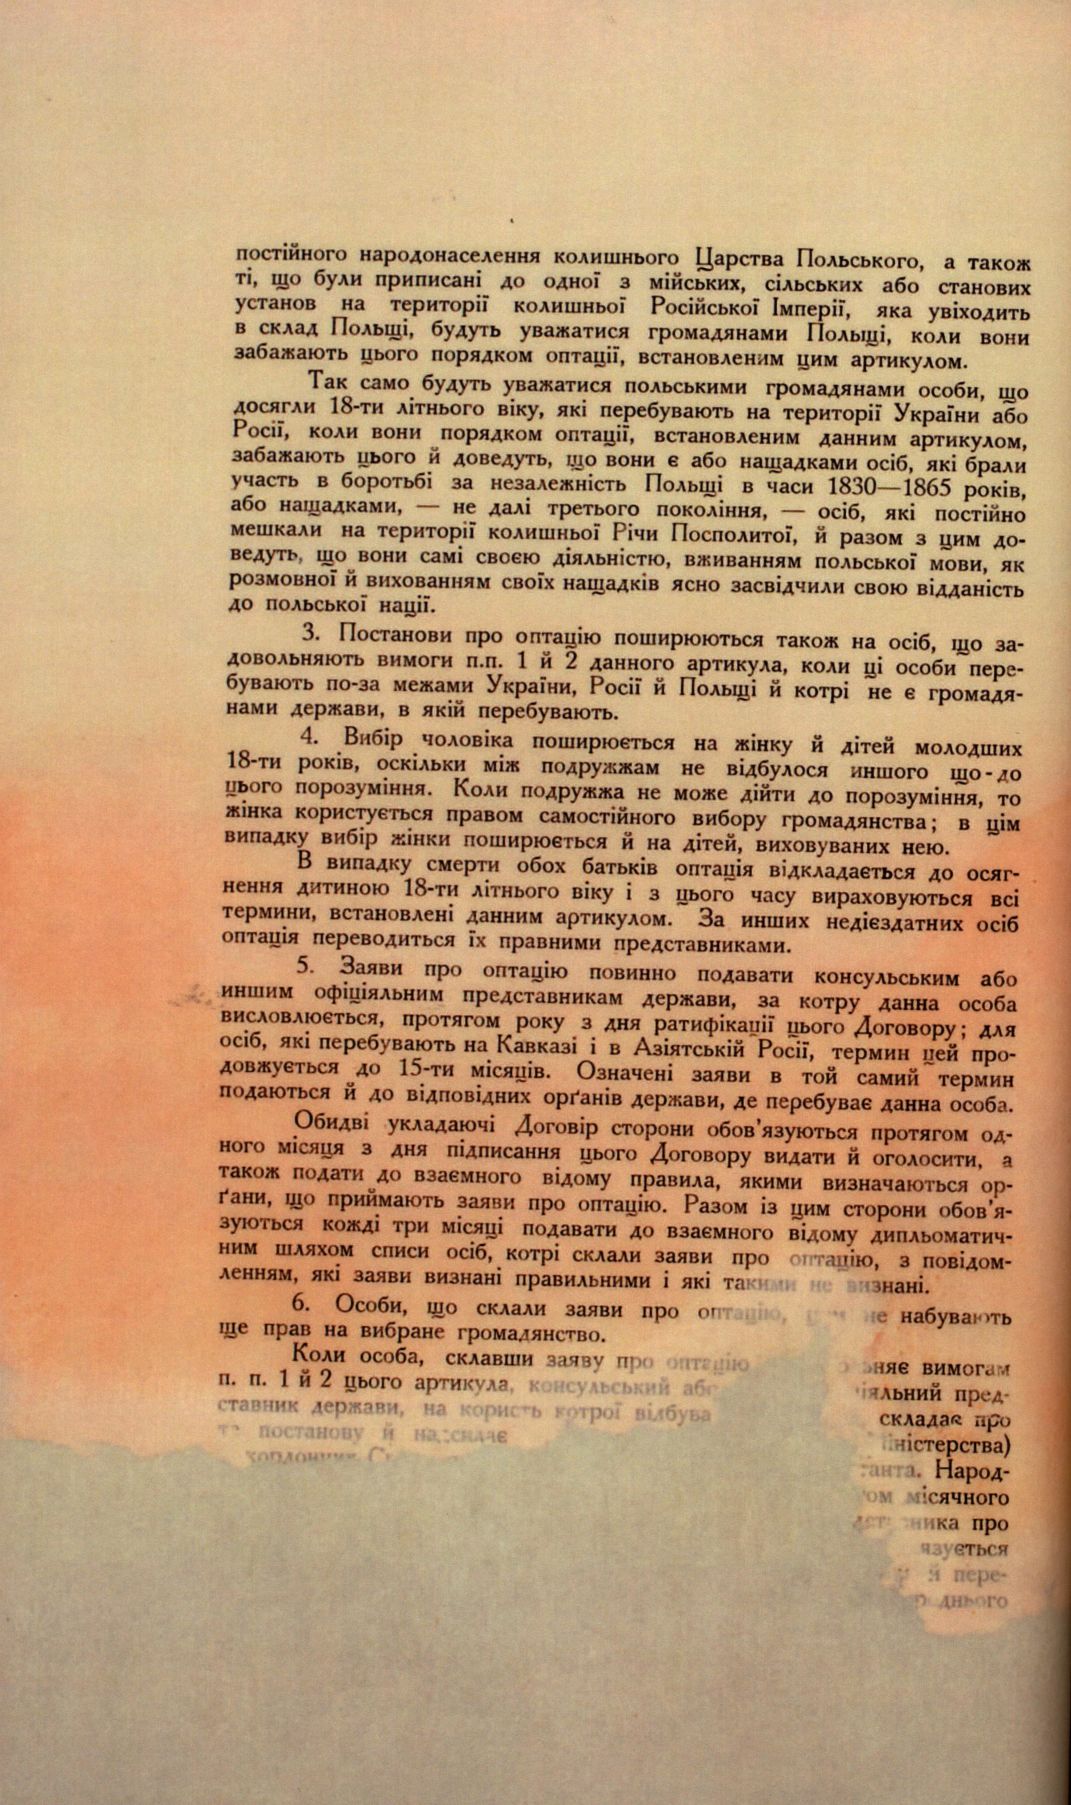 Traktat Pokoju między Polską a Rosją i Ukrainą podpisany w Rydze dnia 18 marca 1921 roku, s. 40, MSZ, sygn. 6739.